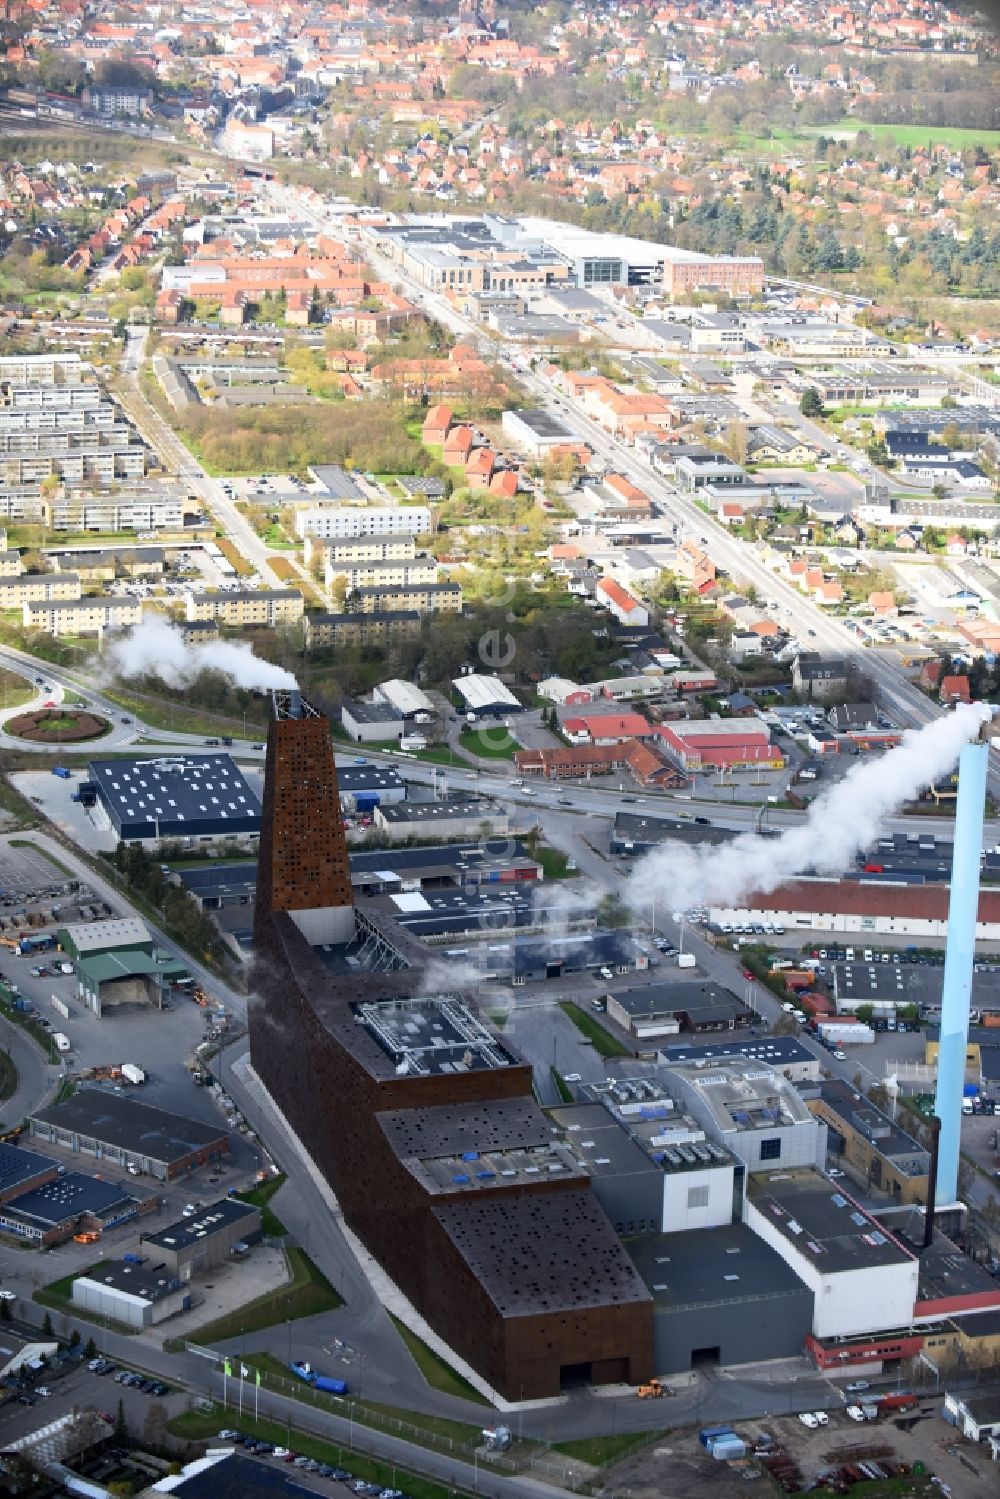 Luftbild Roskilde - Kraftwerksanlagen des Heizkraftwerkes der KARA/NOVEREN I/S in Roskilde in Region Själland, Dänemark